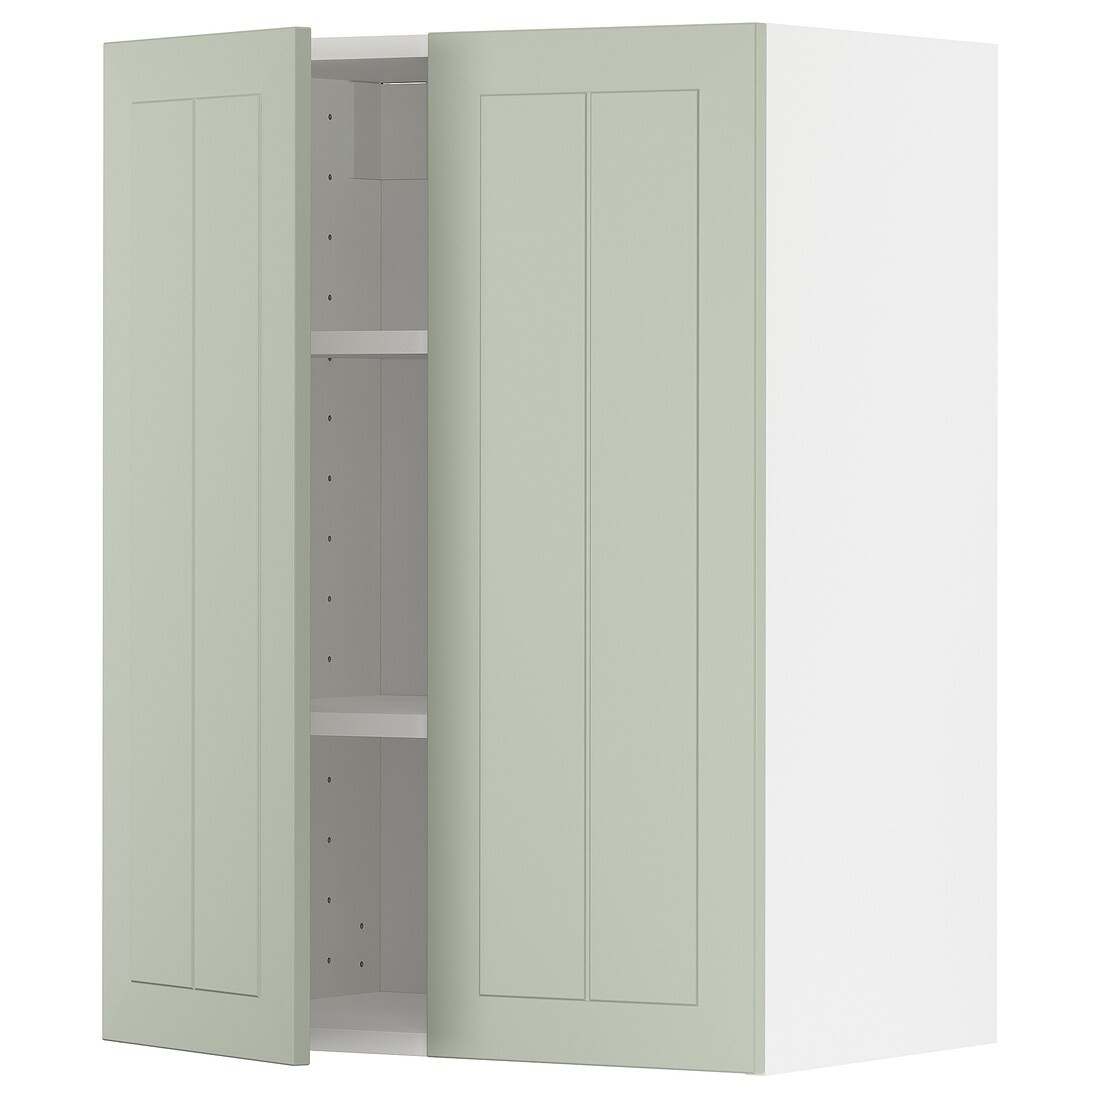 METOD МЕТОД Навесной шкаф с полками / 2 дверцы, белый / Stensund светло-зеленый, 60x80 см